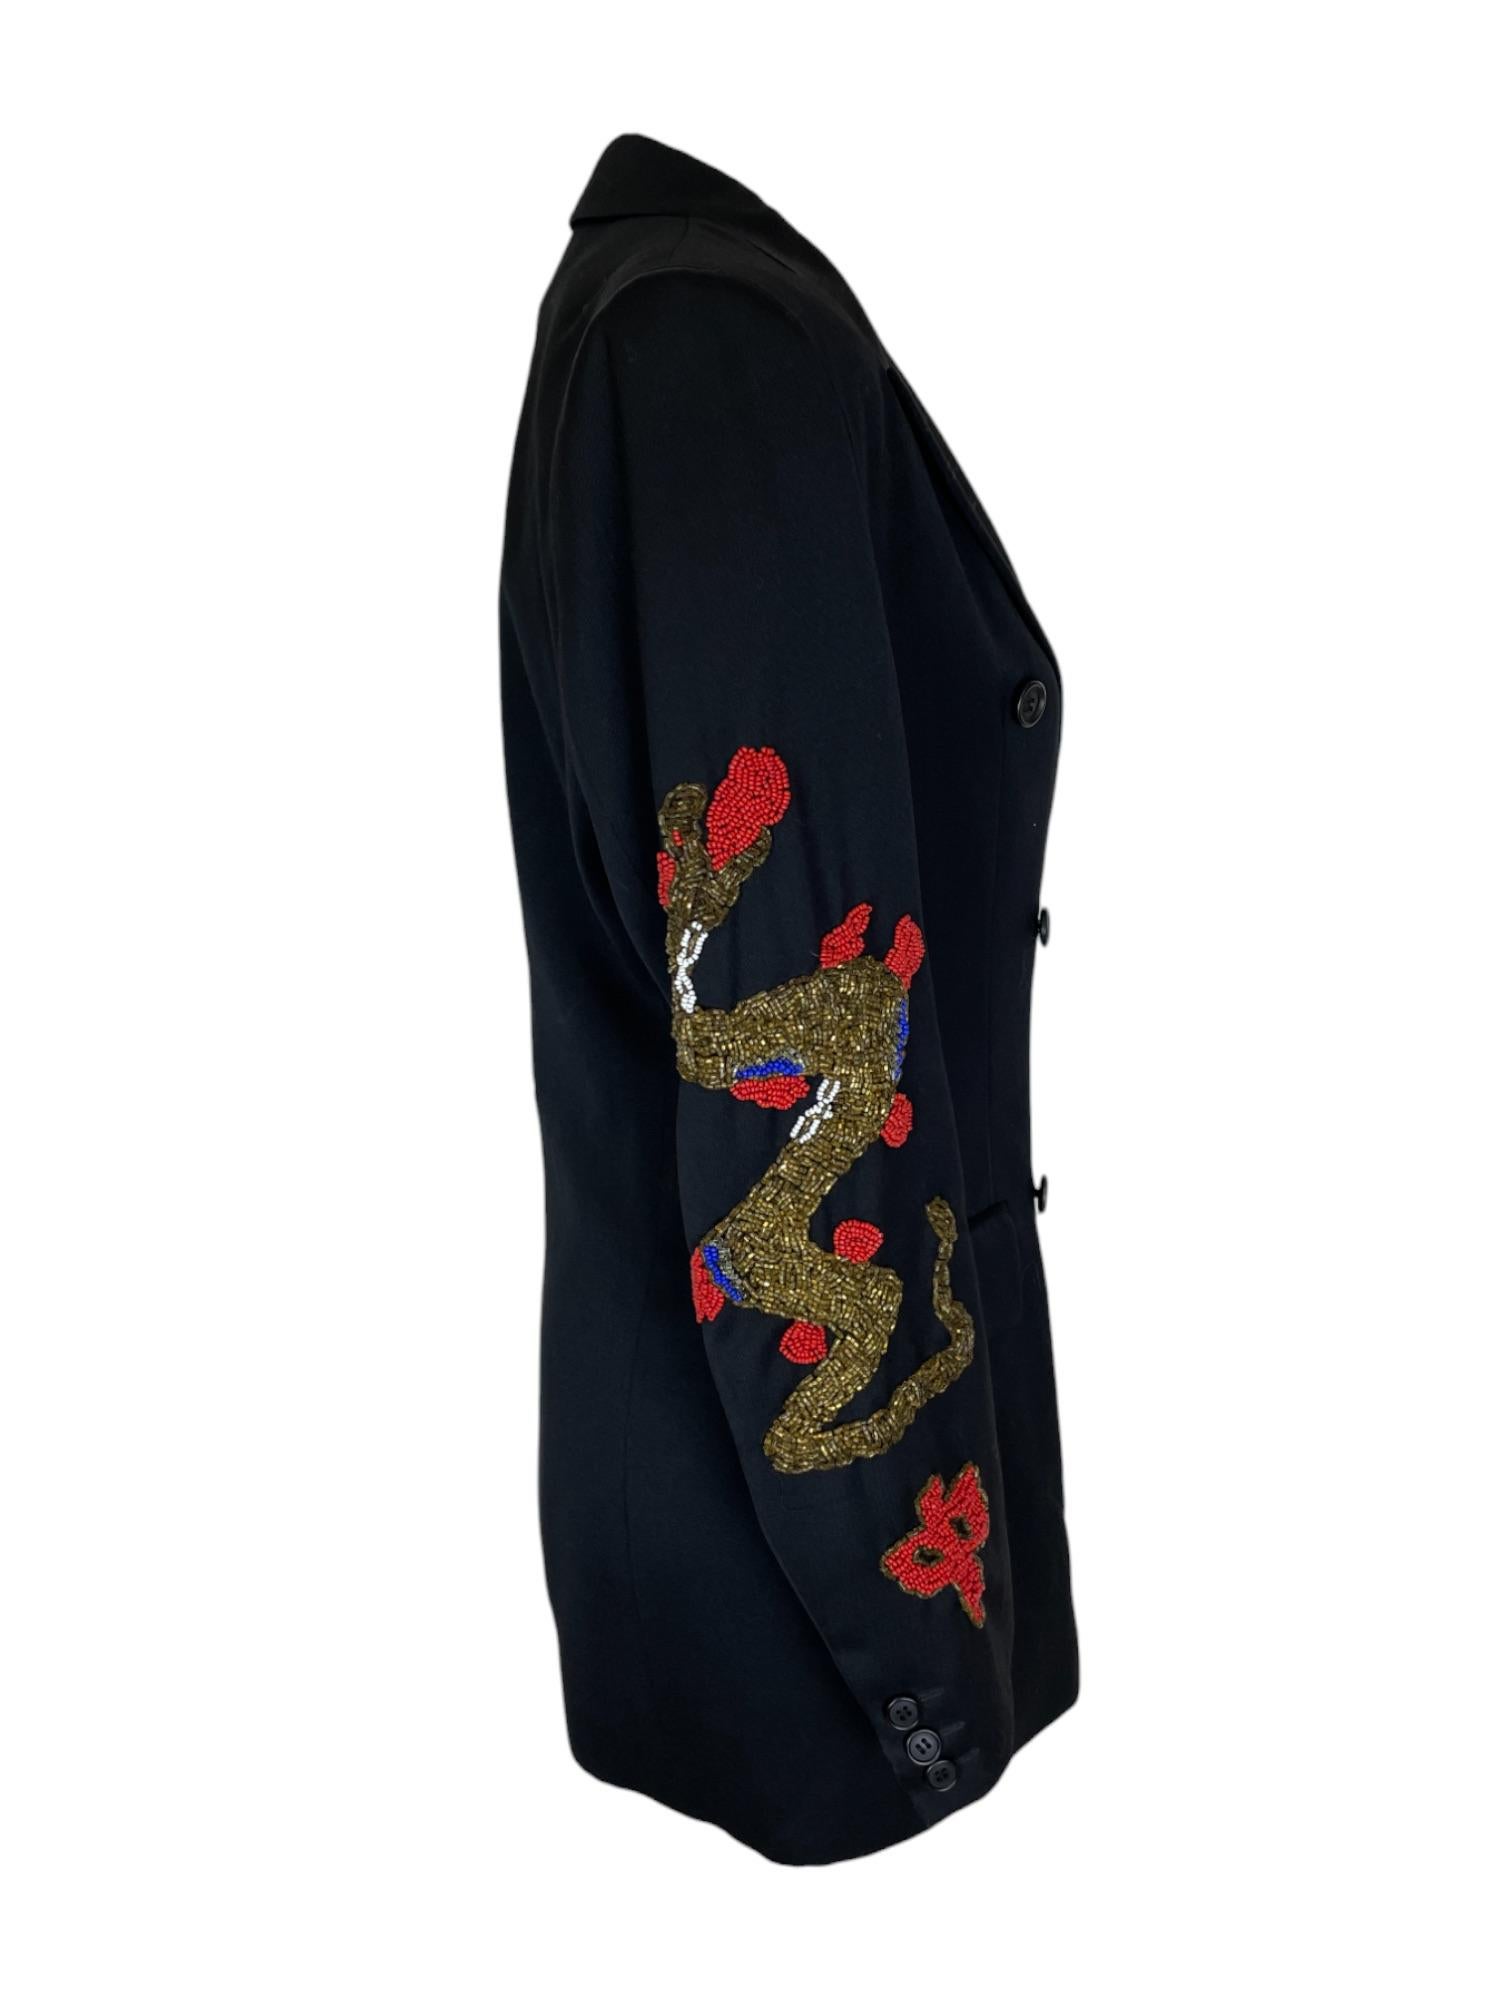 Rare Dolce & Gabbana Runway Jacket

Utilisée dans la campagne iconique de Steven Meisel avec Kate Moss et Nadja Auermann.

Automne / Hiver 1992

Taille : 42

Mesures : Épaules 42cm / Longueur 70cm

MATERIAL : 100% laine vierge 

Condit : Excellentes